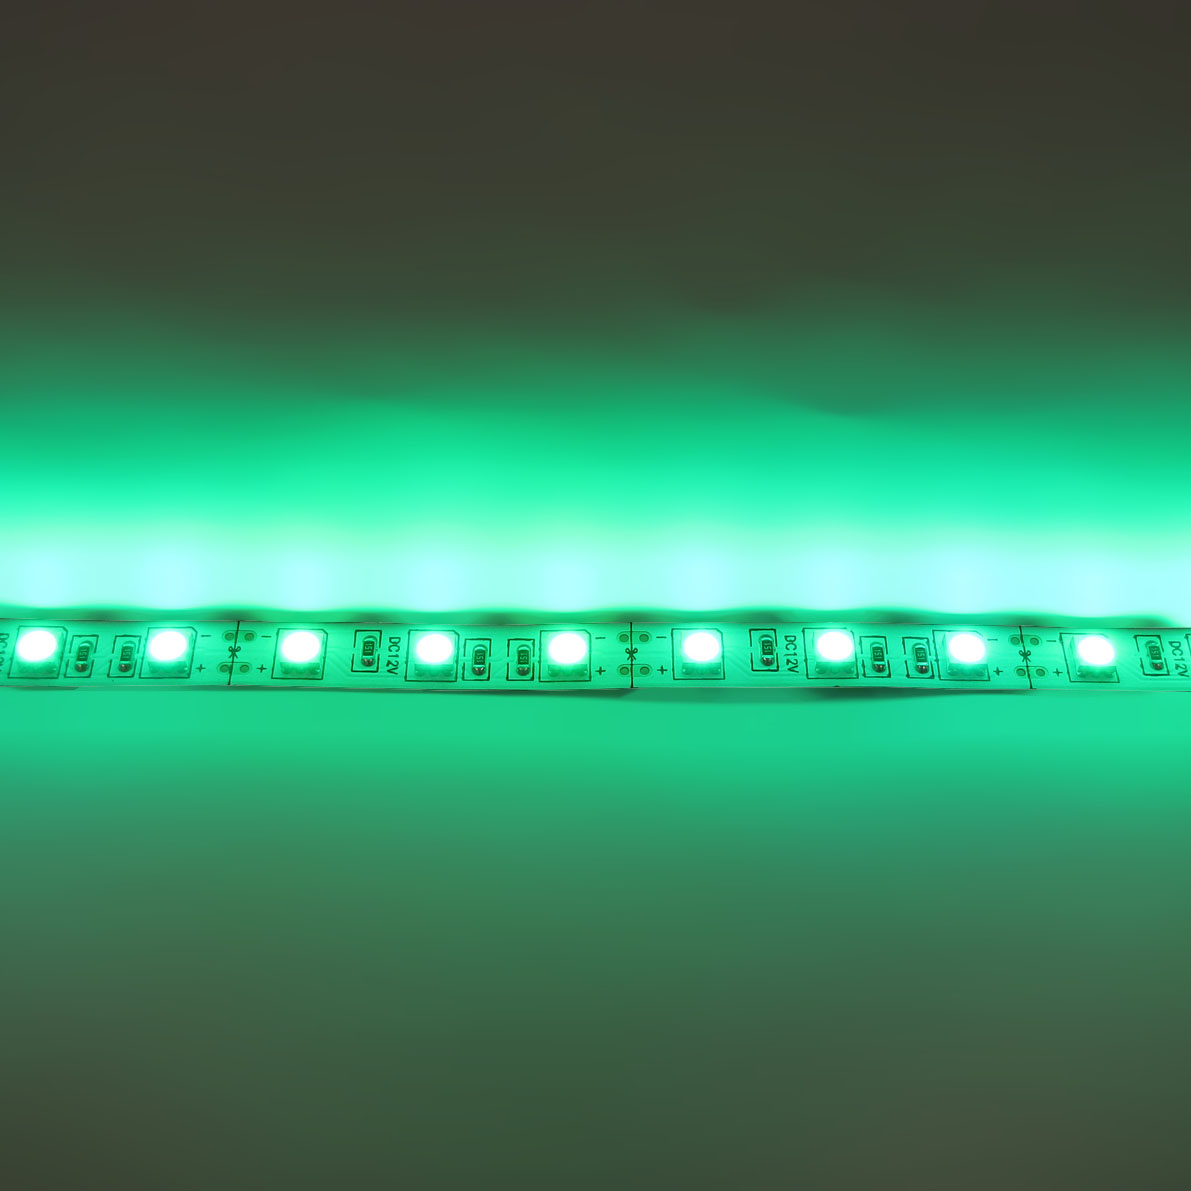 светодиодная лента standart class, 5050, 60led/m, green, 12v, ip33, артикул 52721